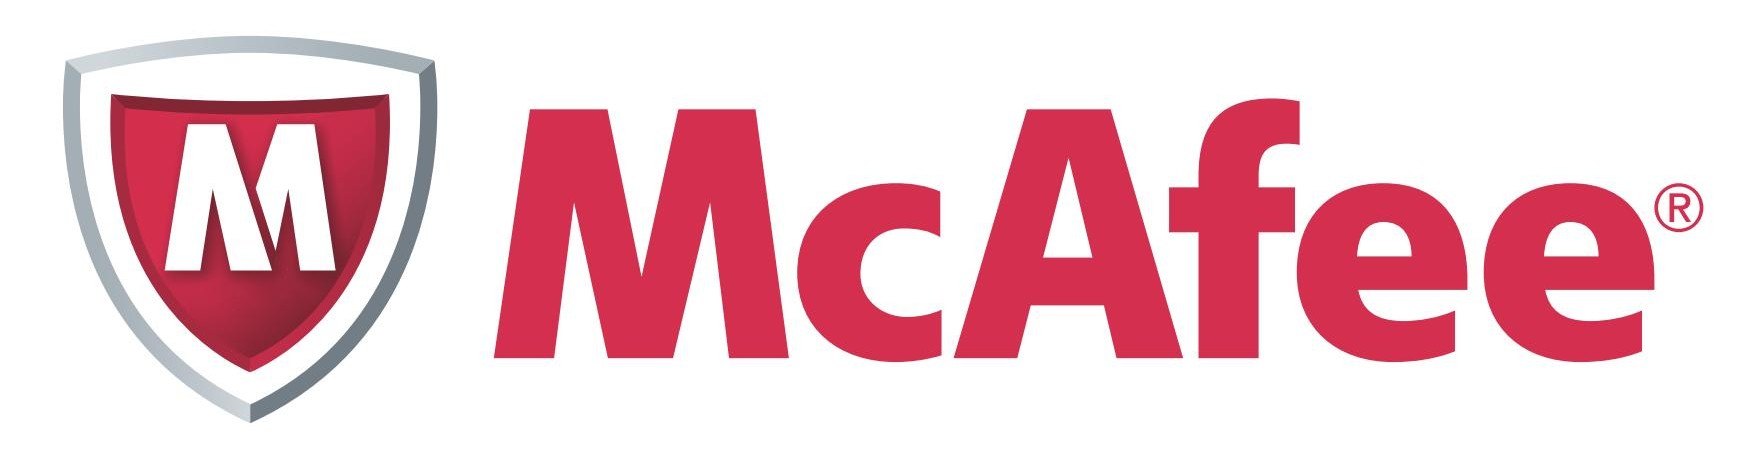 McAfee Logo png